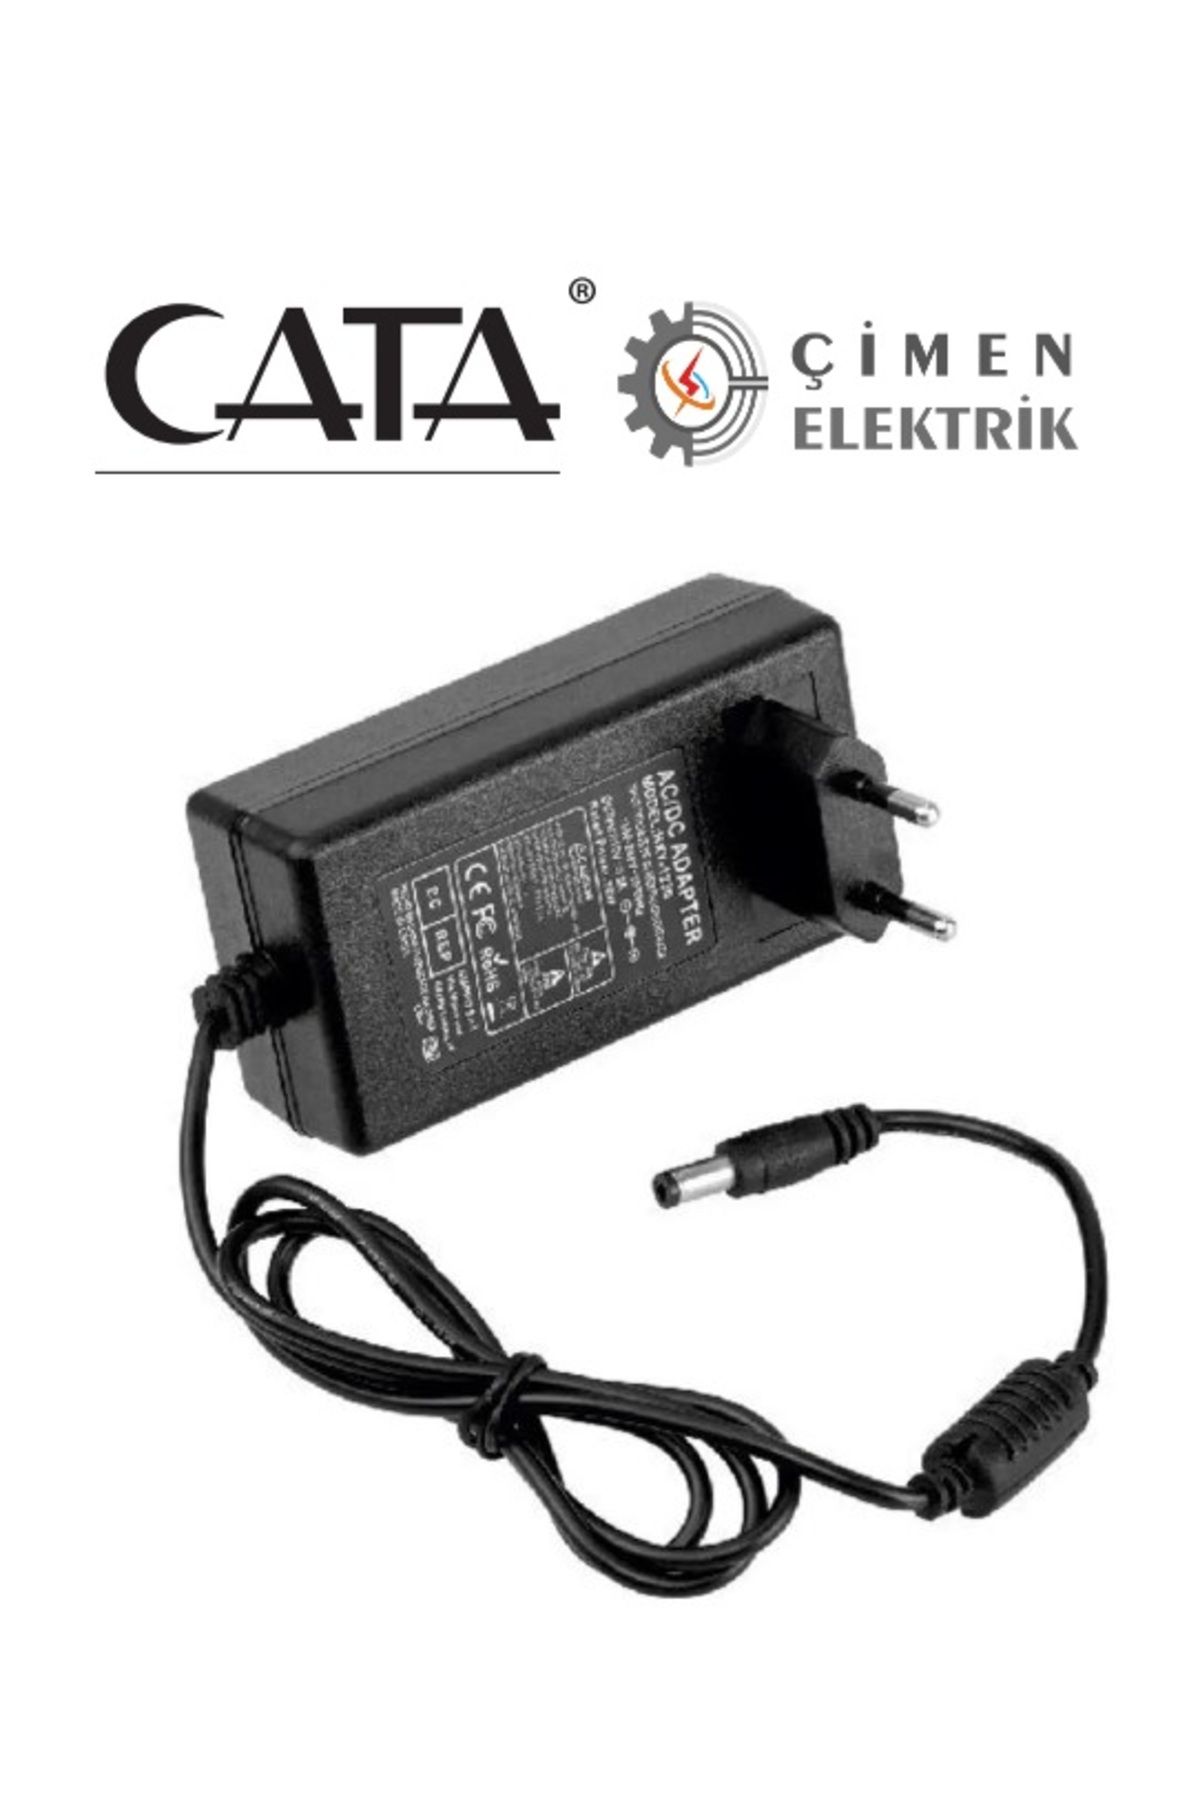 Cata CT 2553 5A 220V Fişli Adaptör